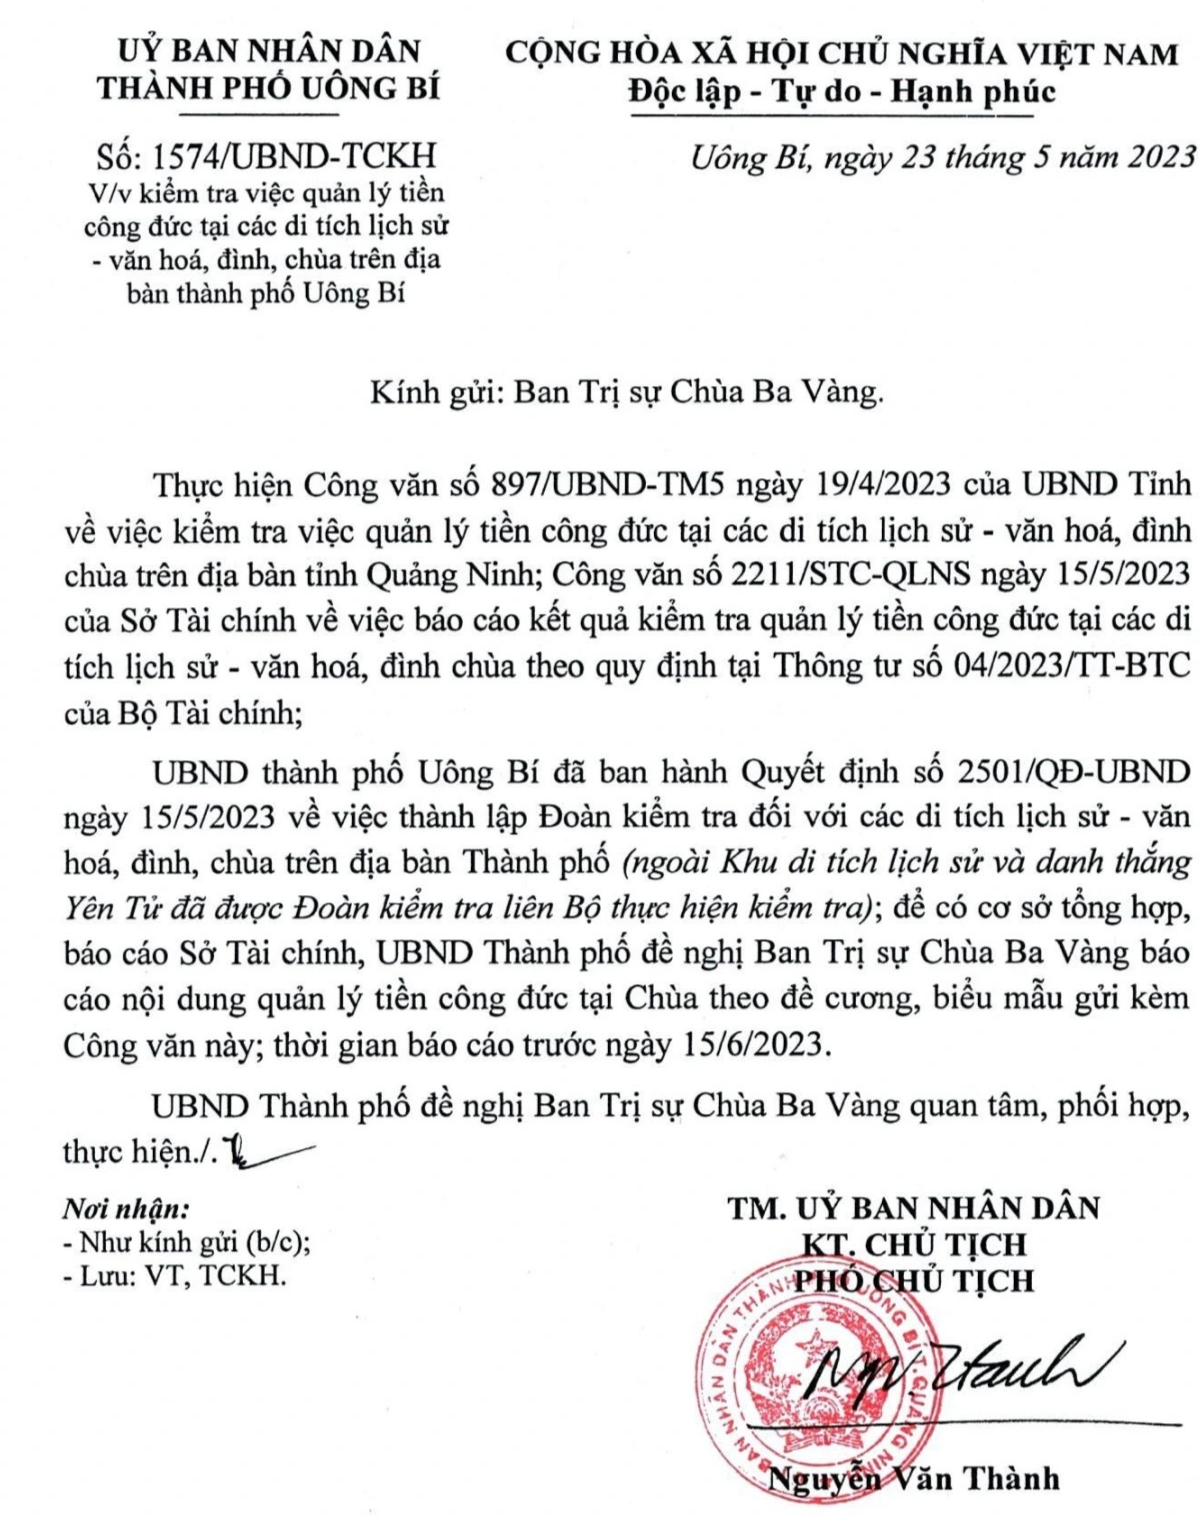 Tiền công đức chùa Ba Vàng: TP Uông Bí từng có văn bản yêu cầu chùa báo cáo  - 1